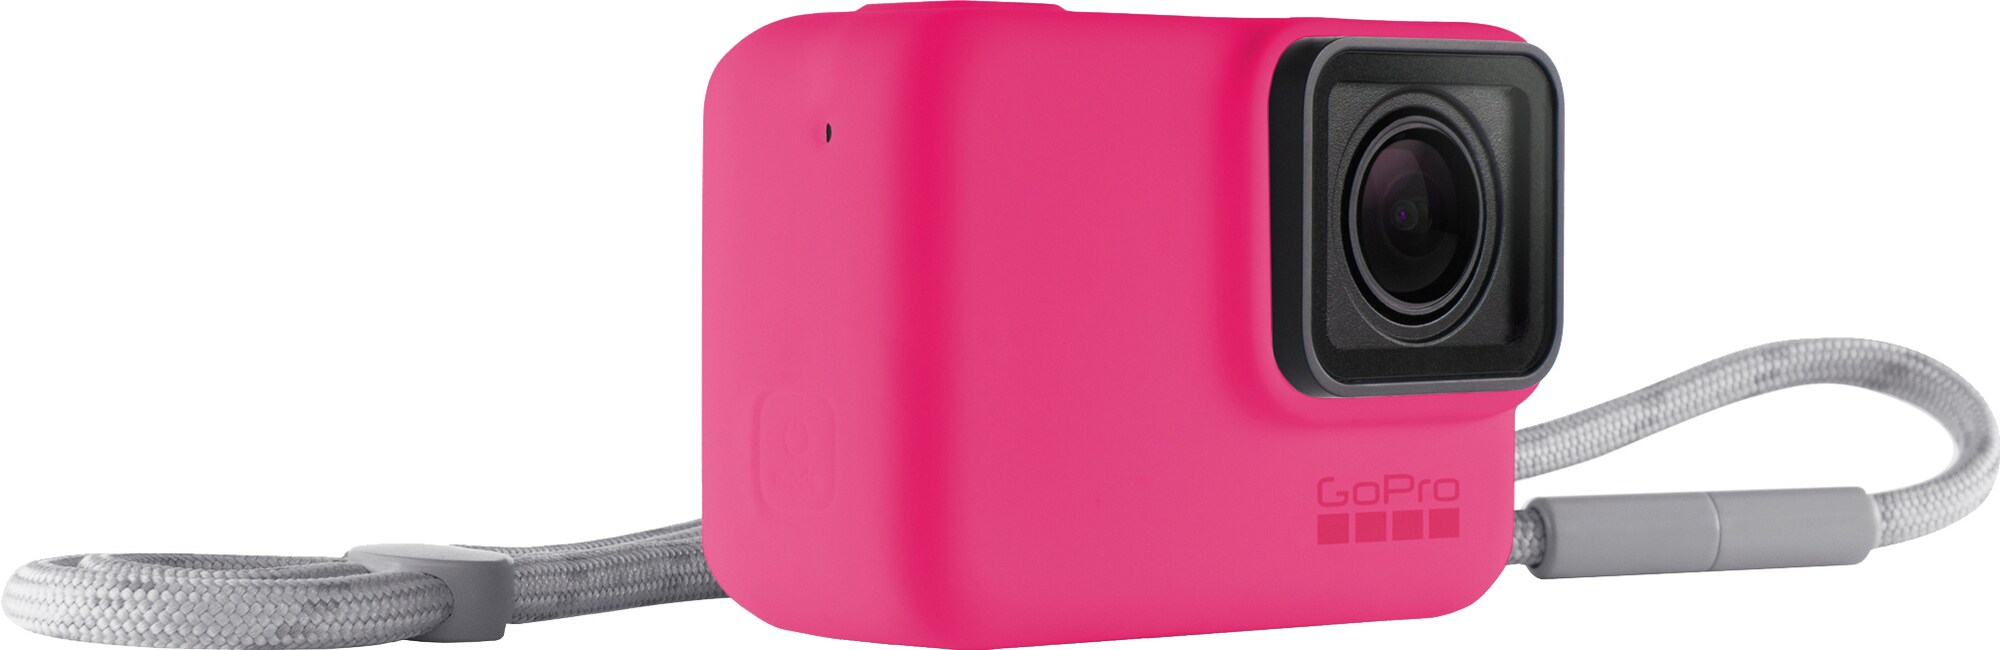 Tilbehør til dit GoPro-kamera - Elgiganten